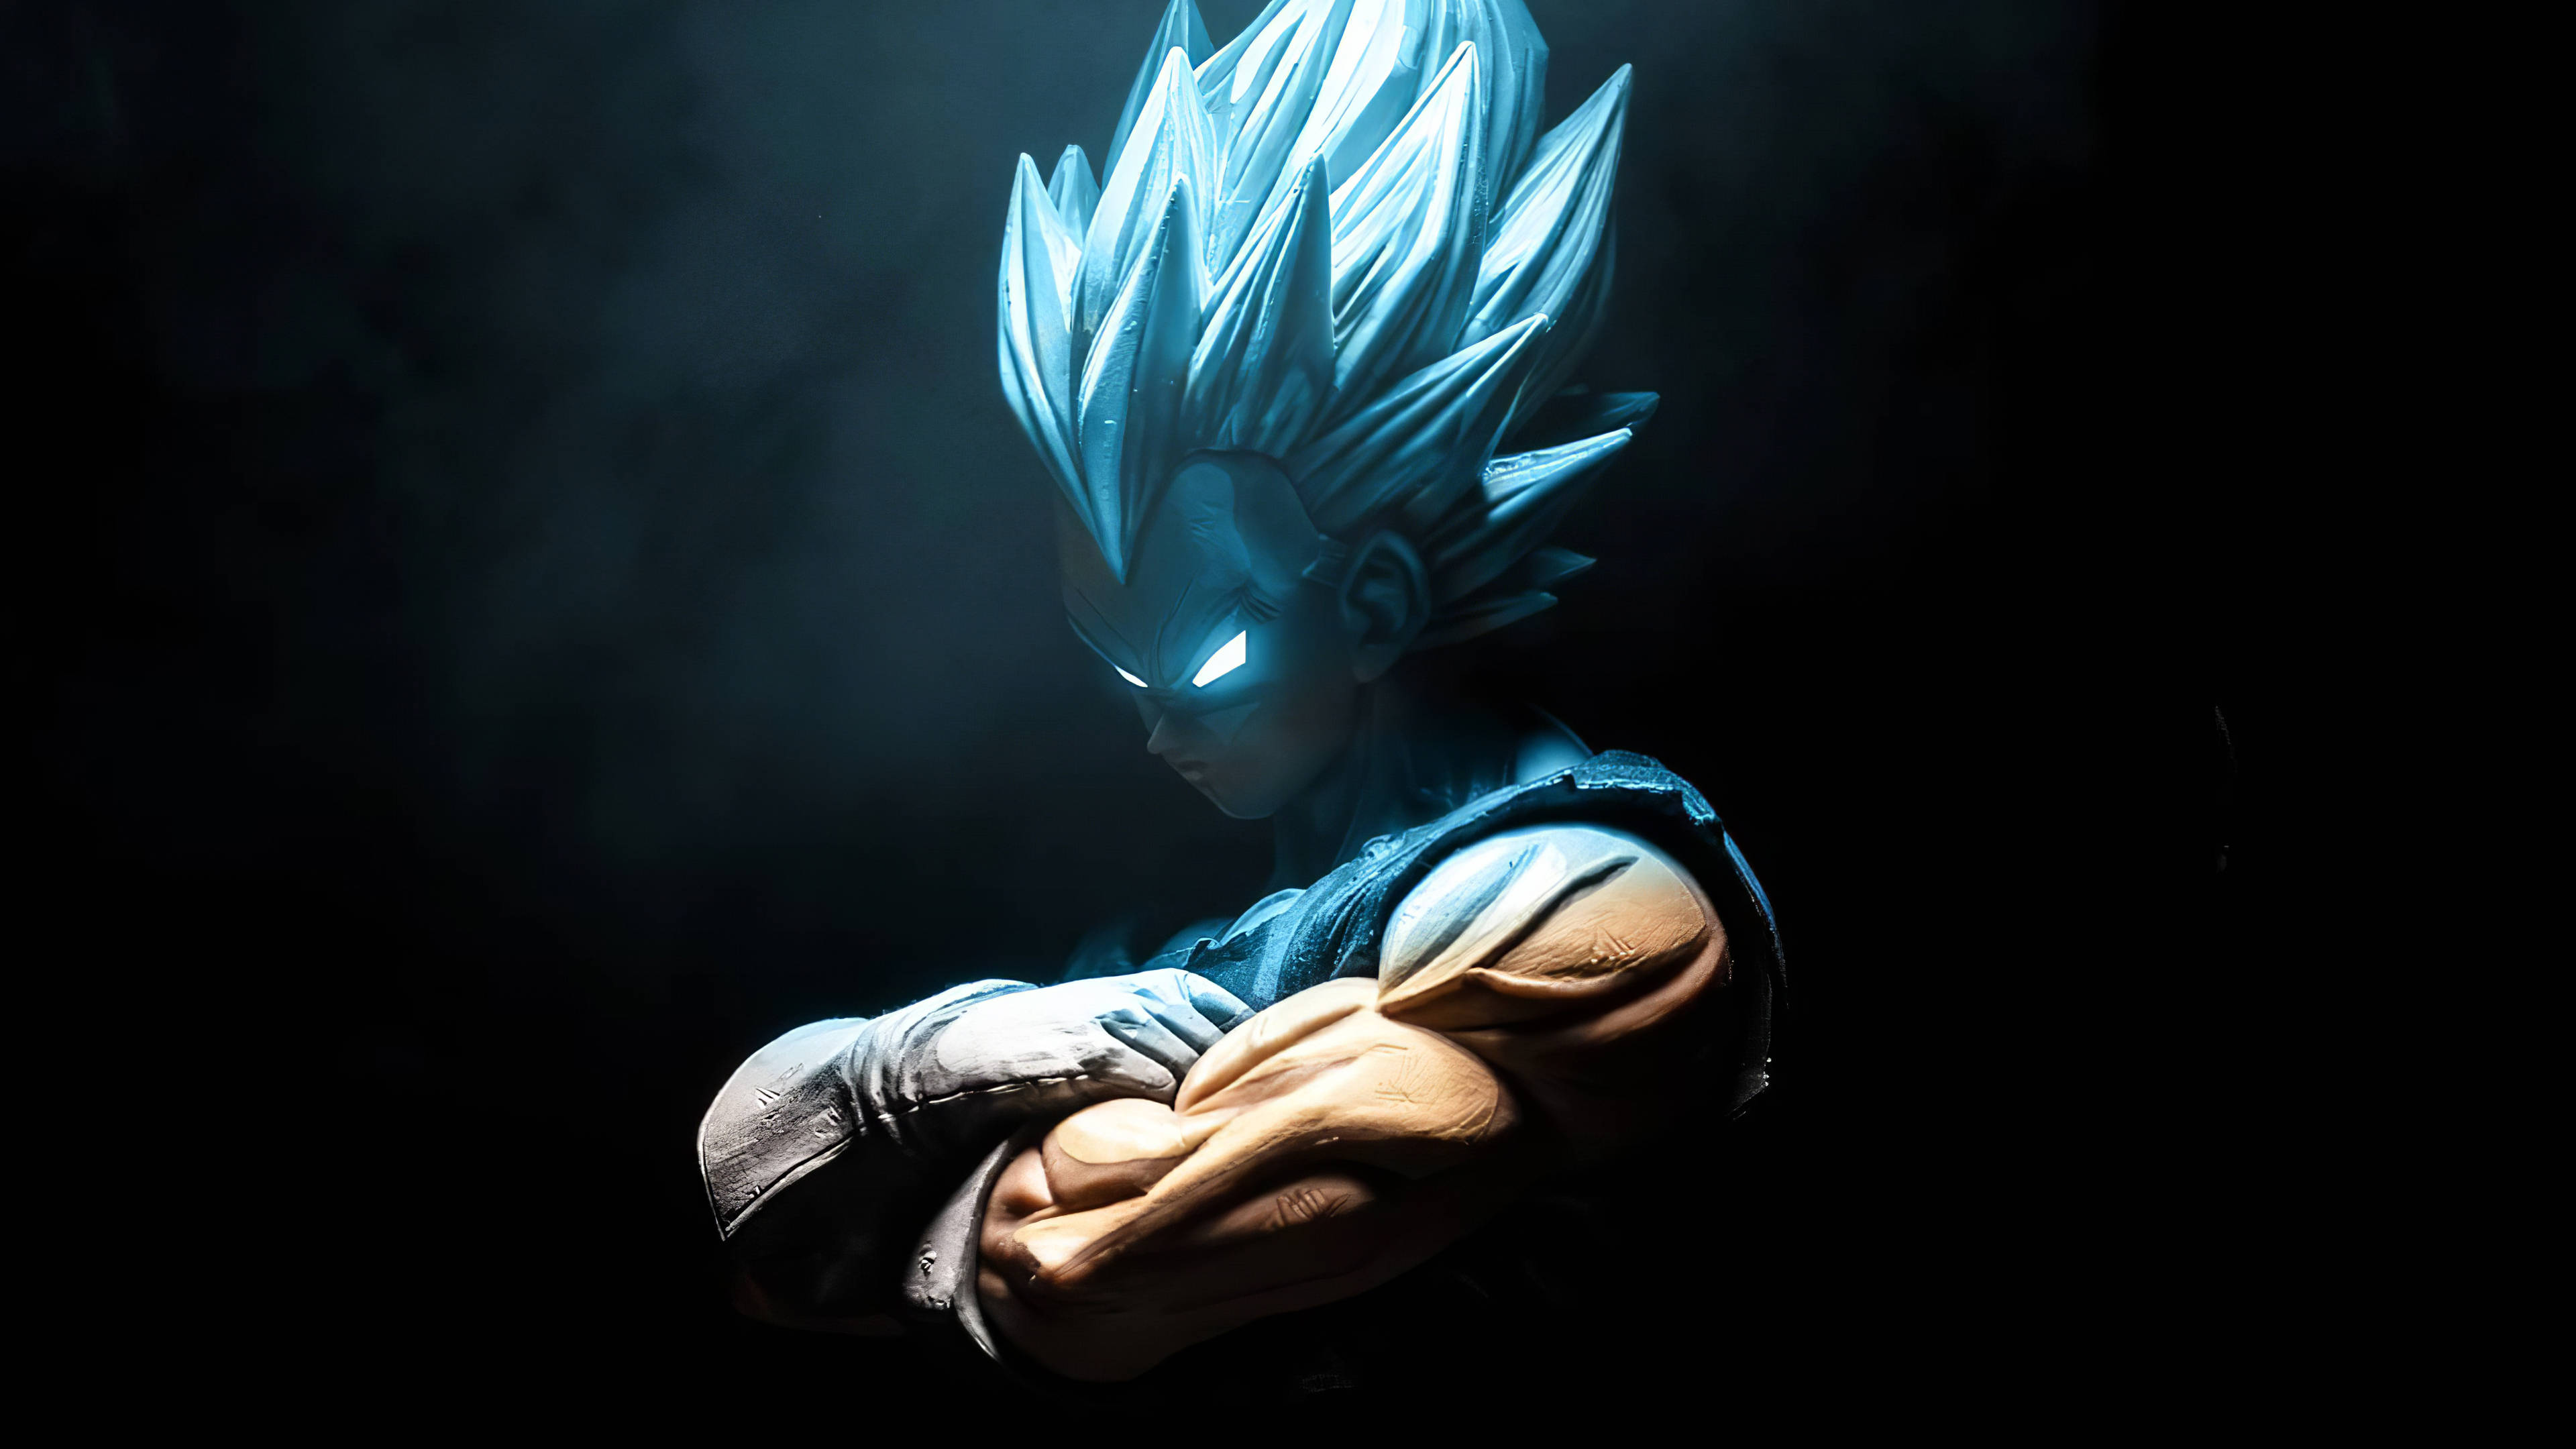 Download Goku 4k Ultra Hd Super Saiyan Blue Glowing Eyes Wallpaper |  